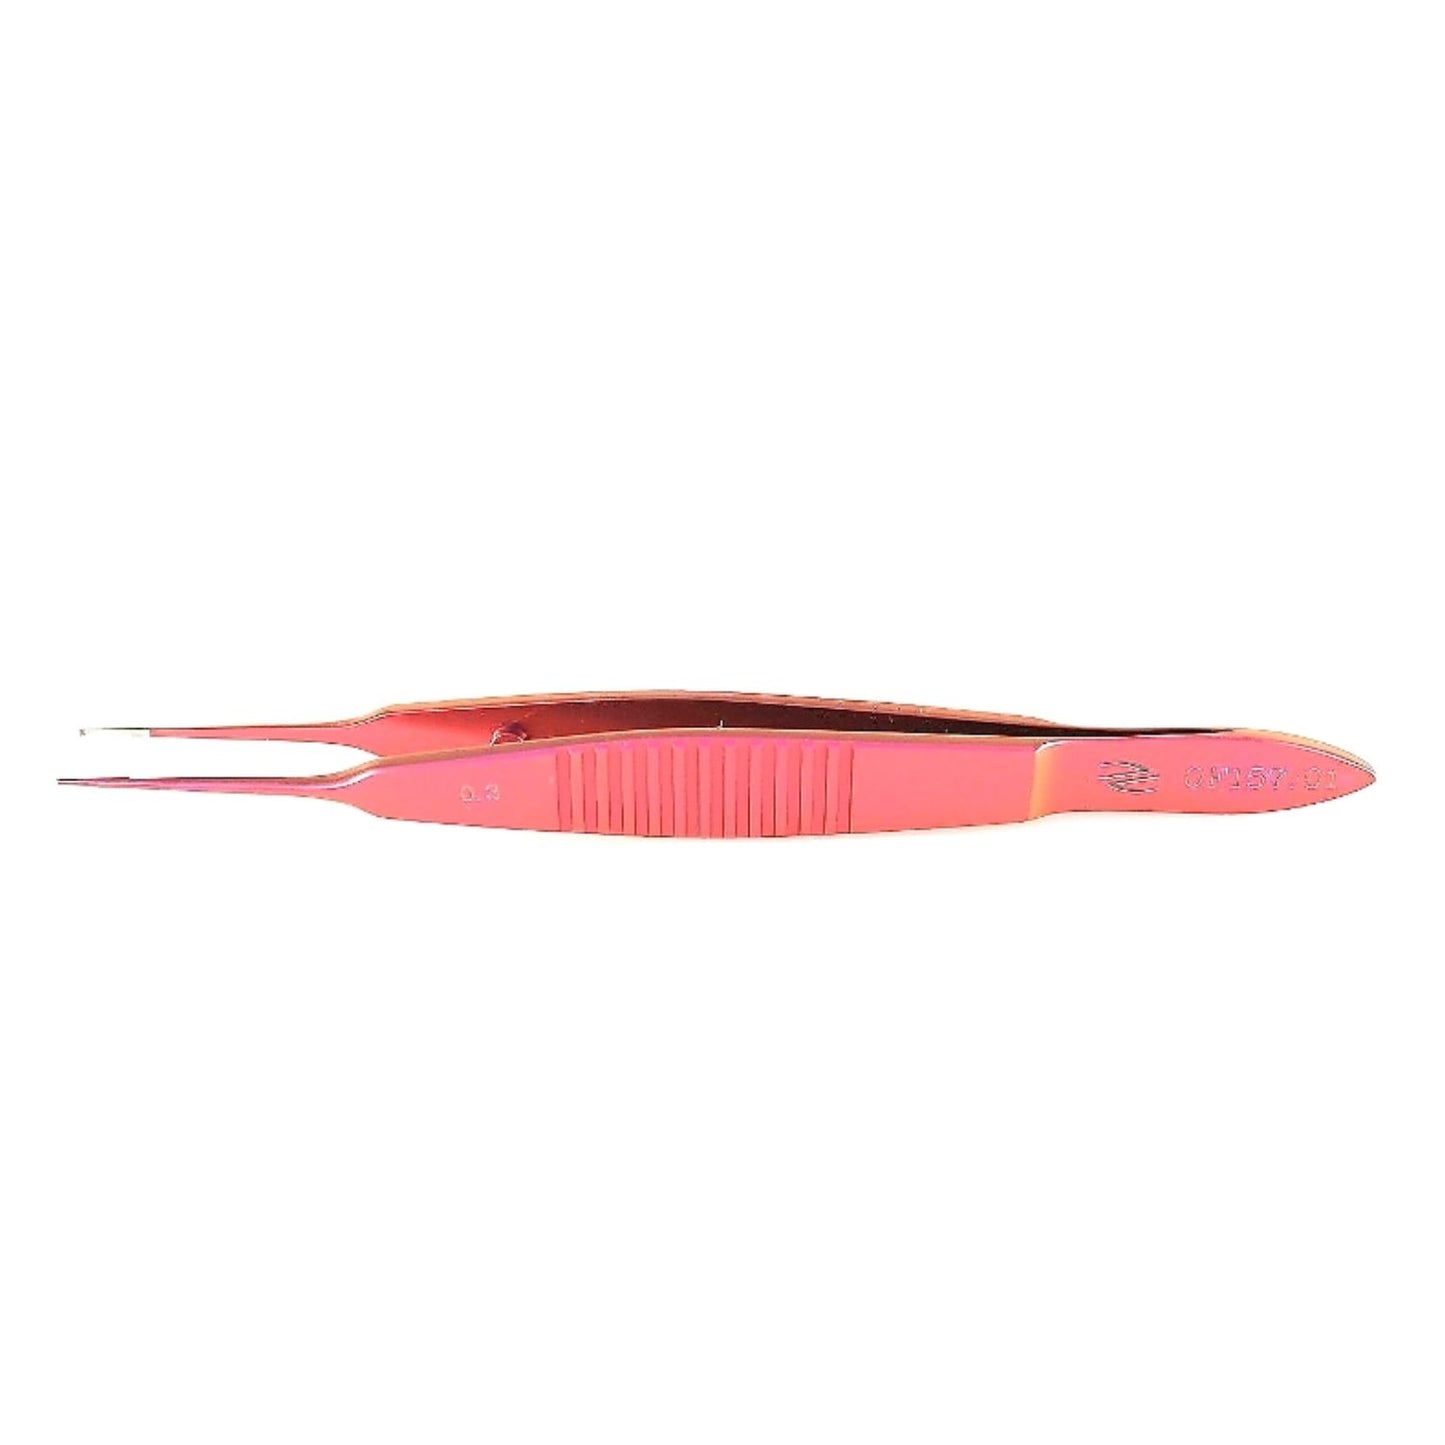 Pinza de sutura Castroviejo, recta, dientes 1x2 0.3mm en 90 , titanio